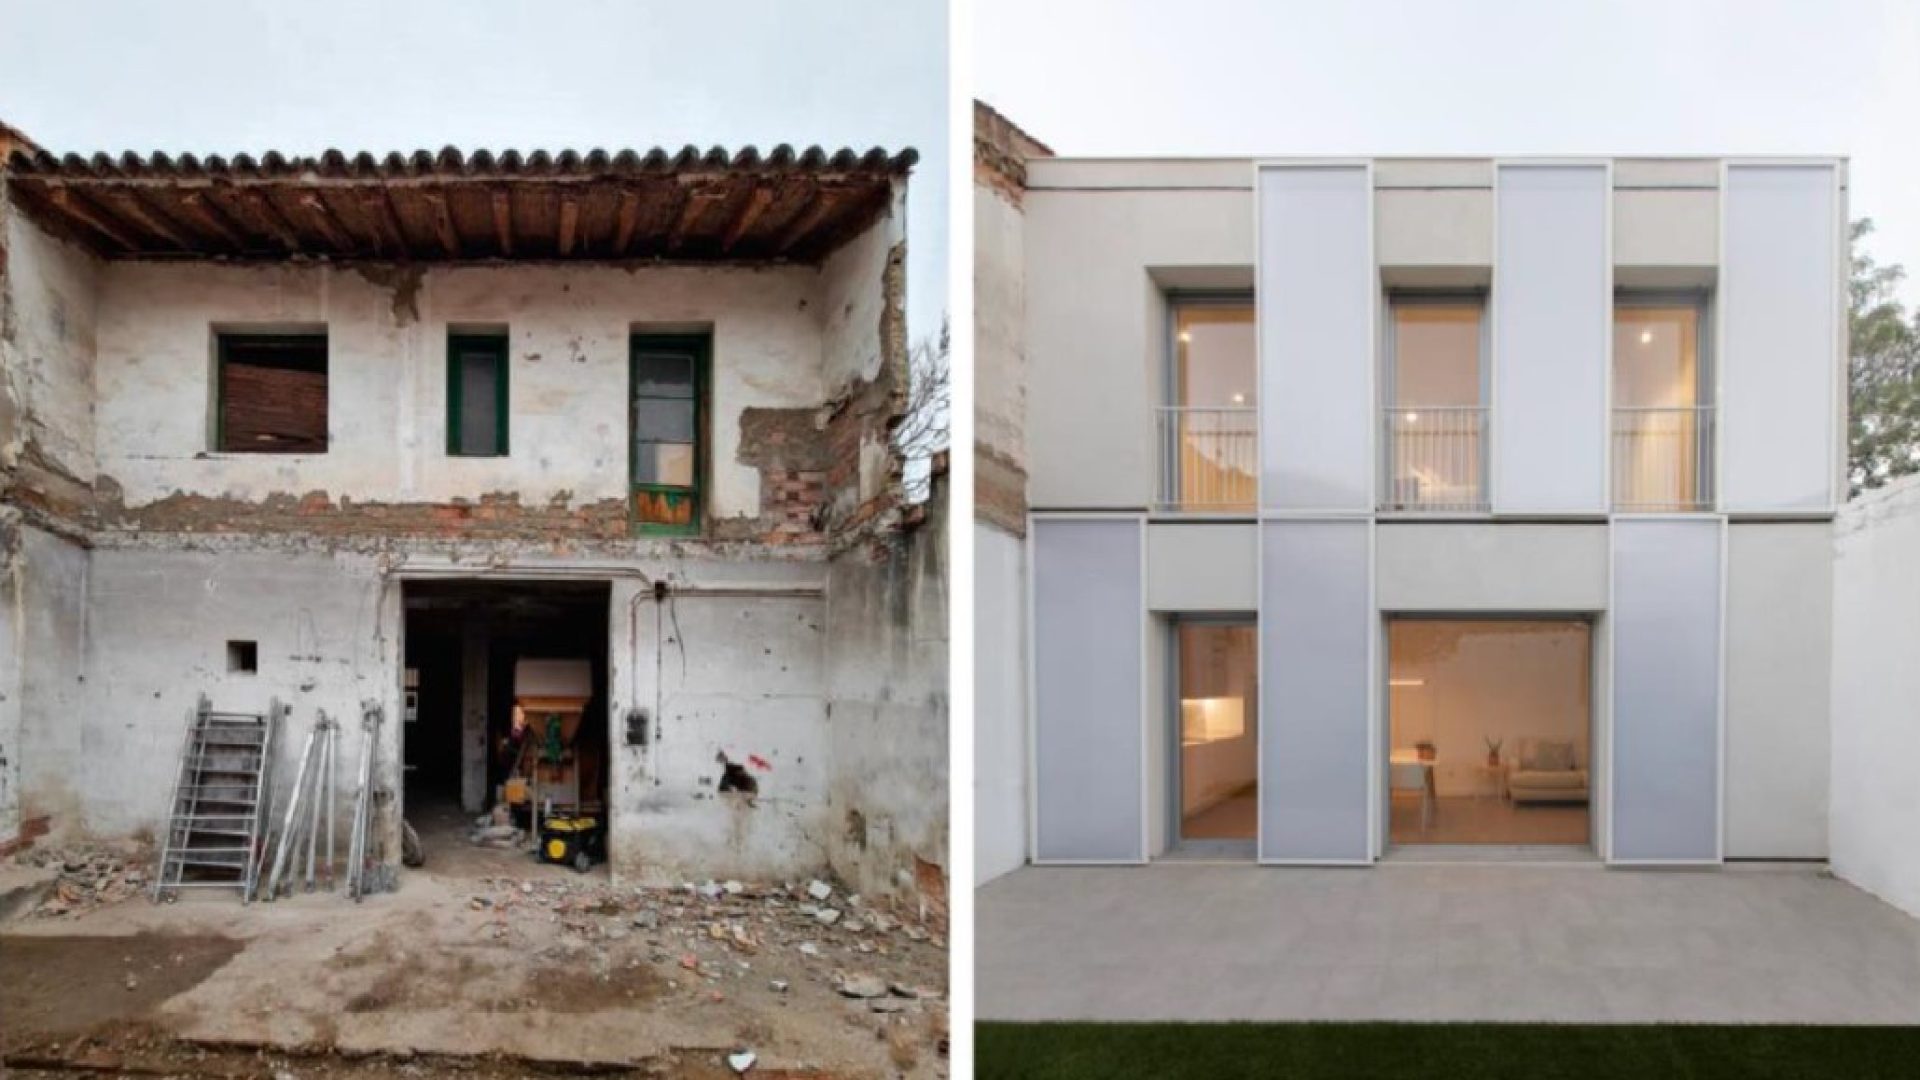 FINALISTA Mejor Actuación de Reforma, Rehabilitación o Restauración Edificatoria: “Casa Velo” de DANA Arquitectos